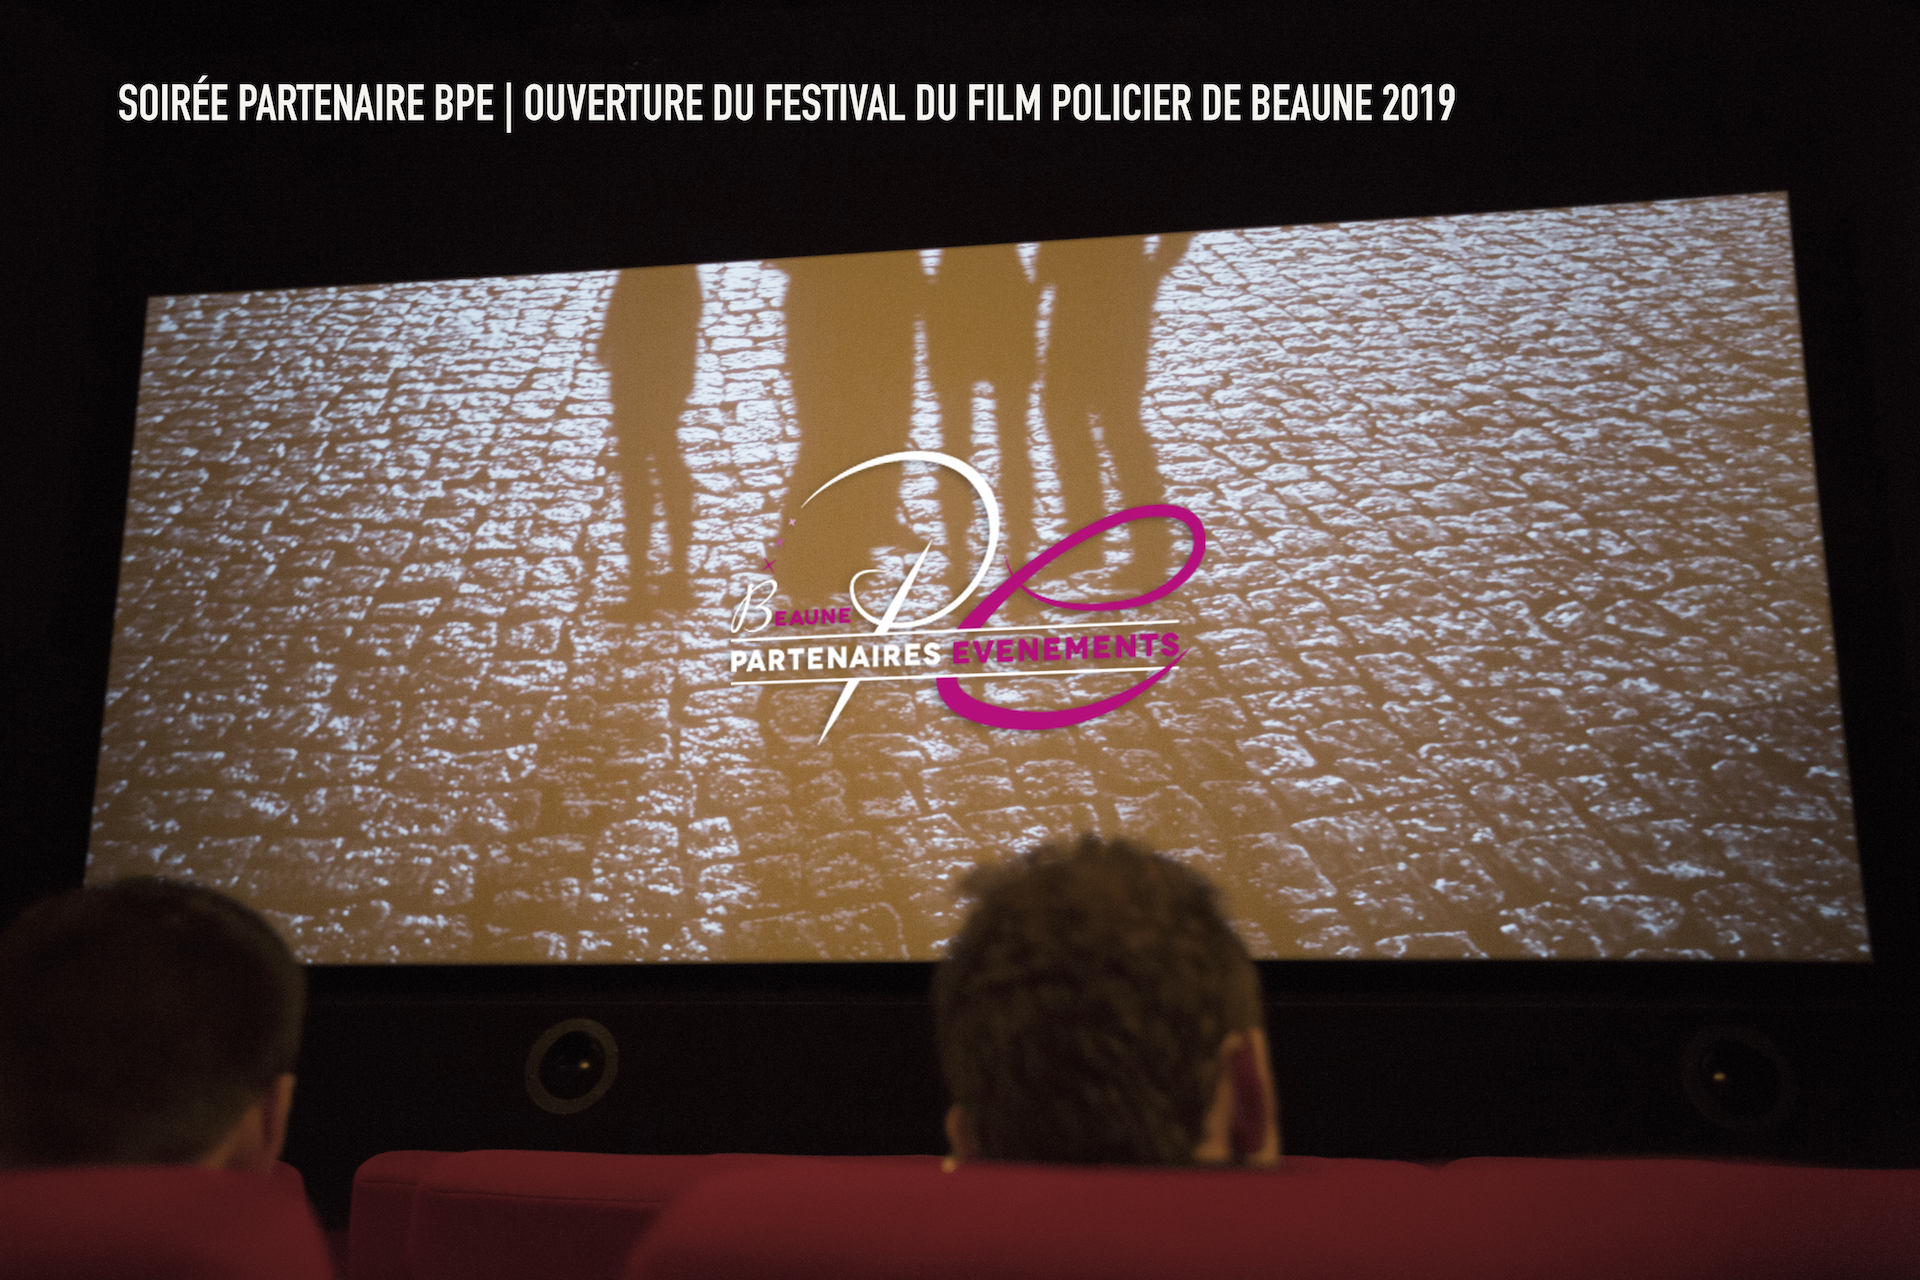 Soirée Partenaire BPE | Ouverture du Festival de Film Policier de Beaune 2019